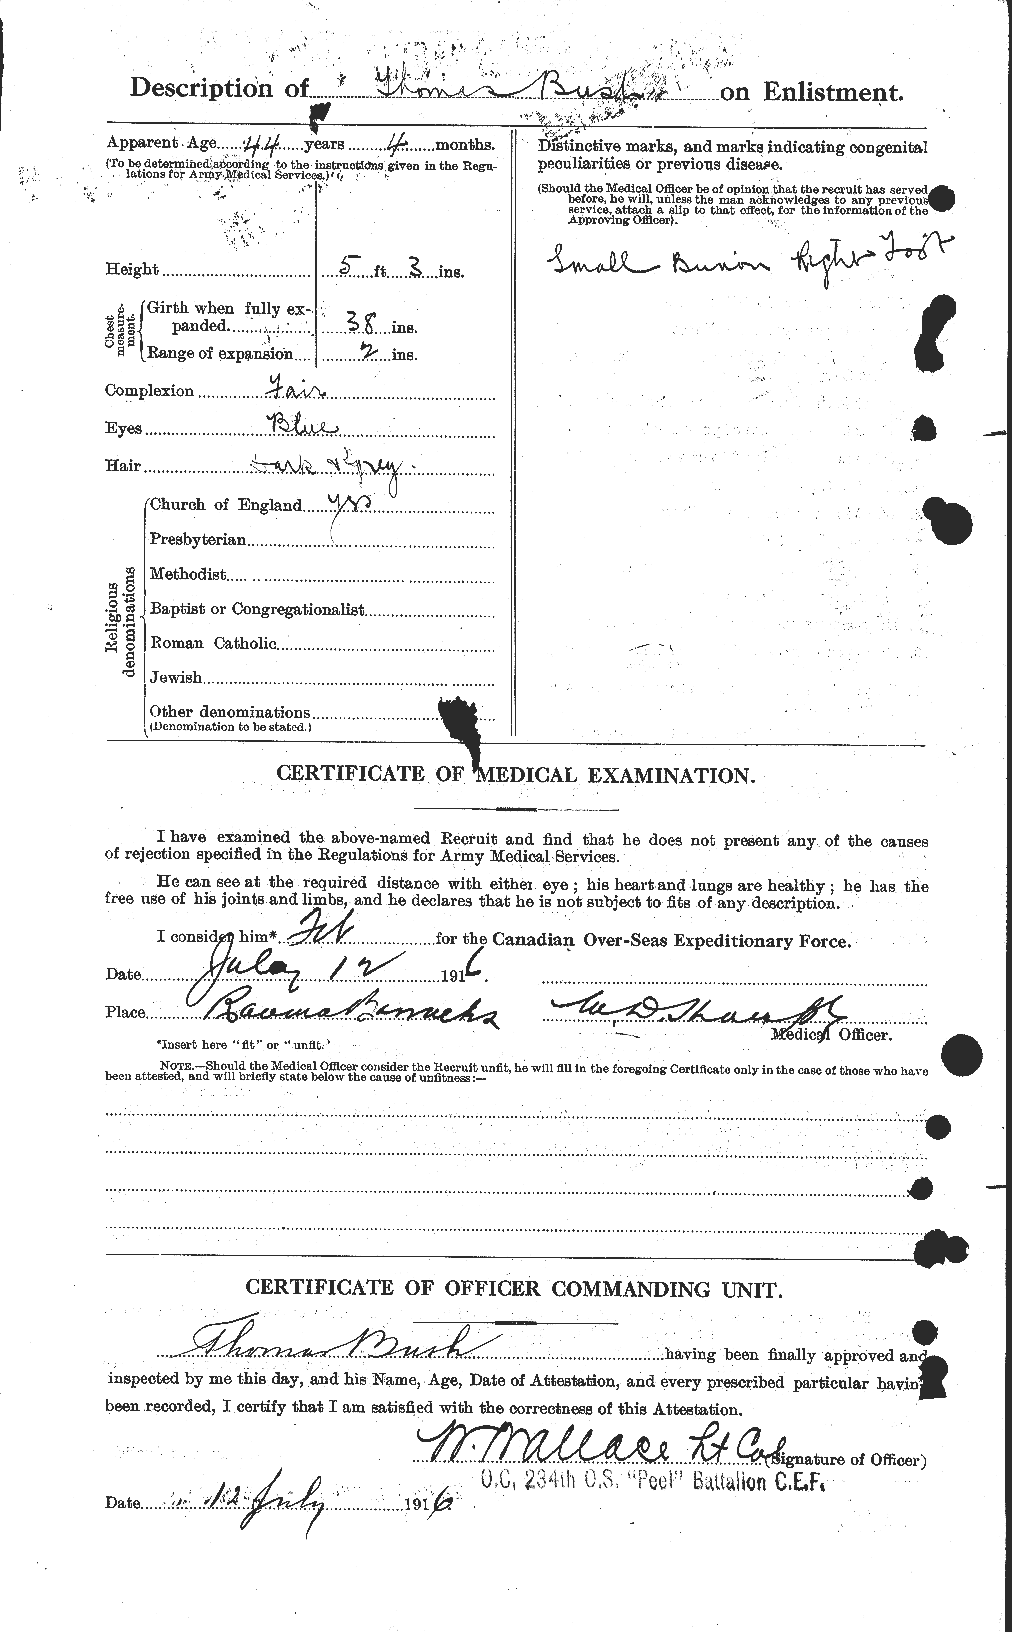 Dossiers du Personnel de la Première Guerre mondiale - CEC 274426b